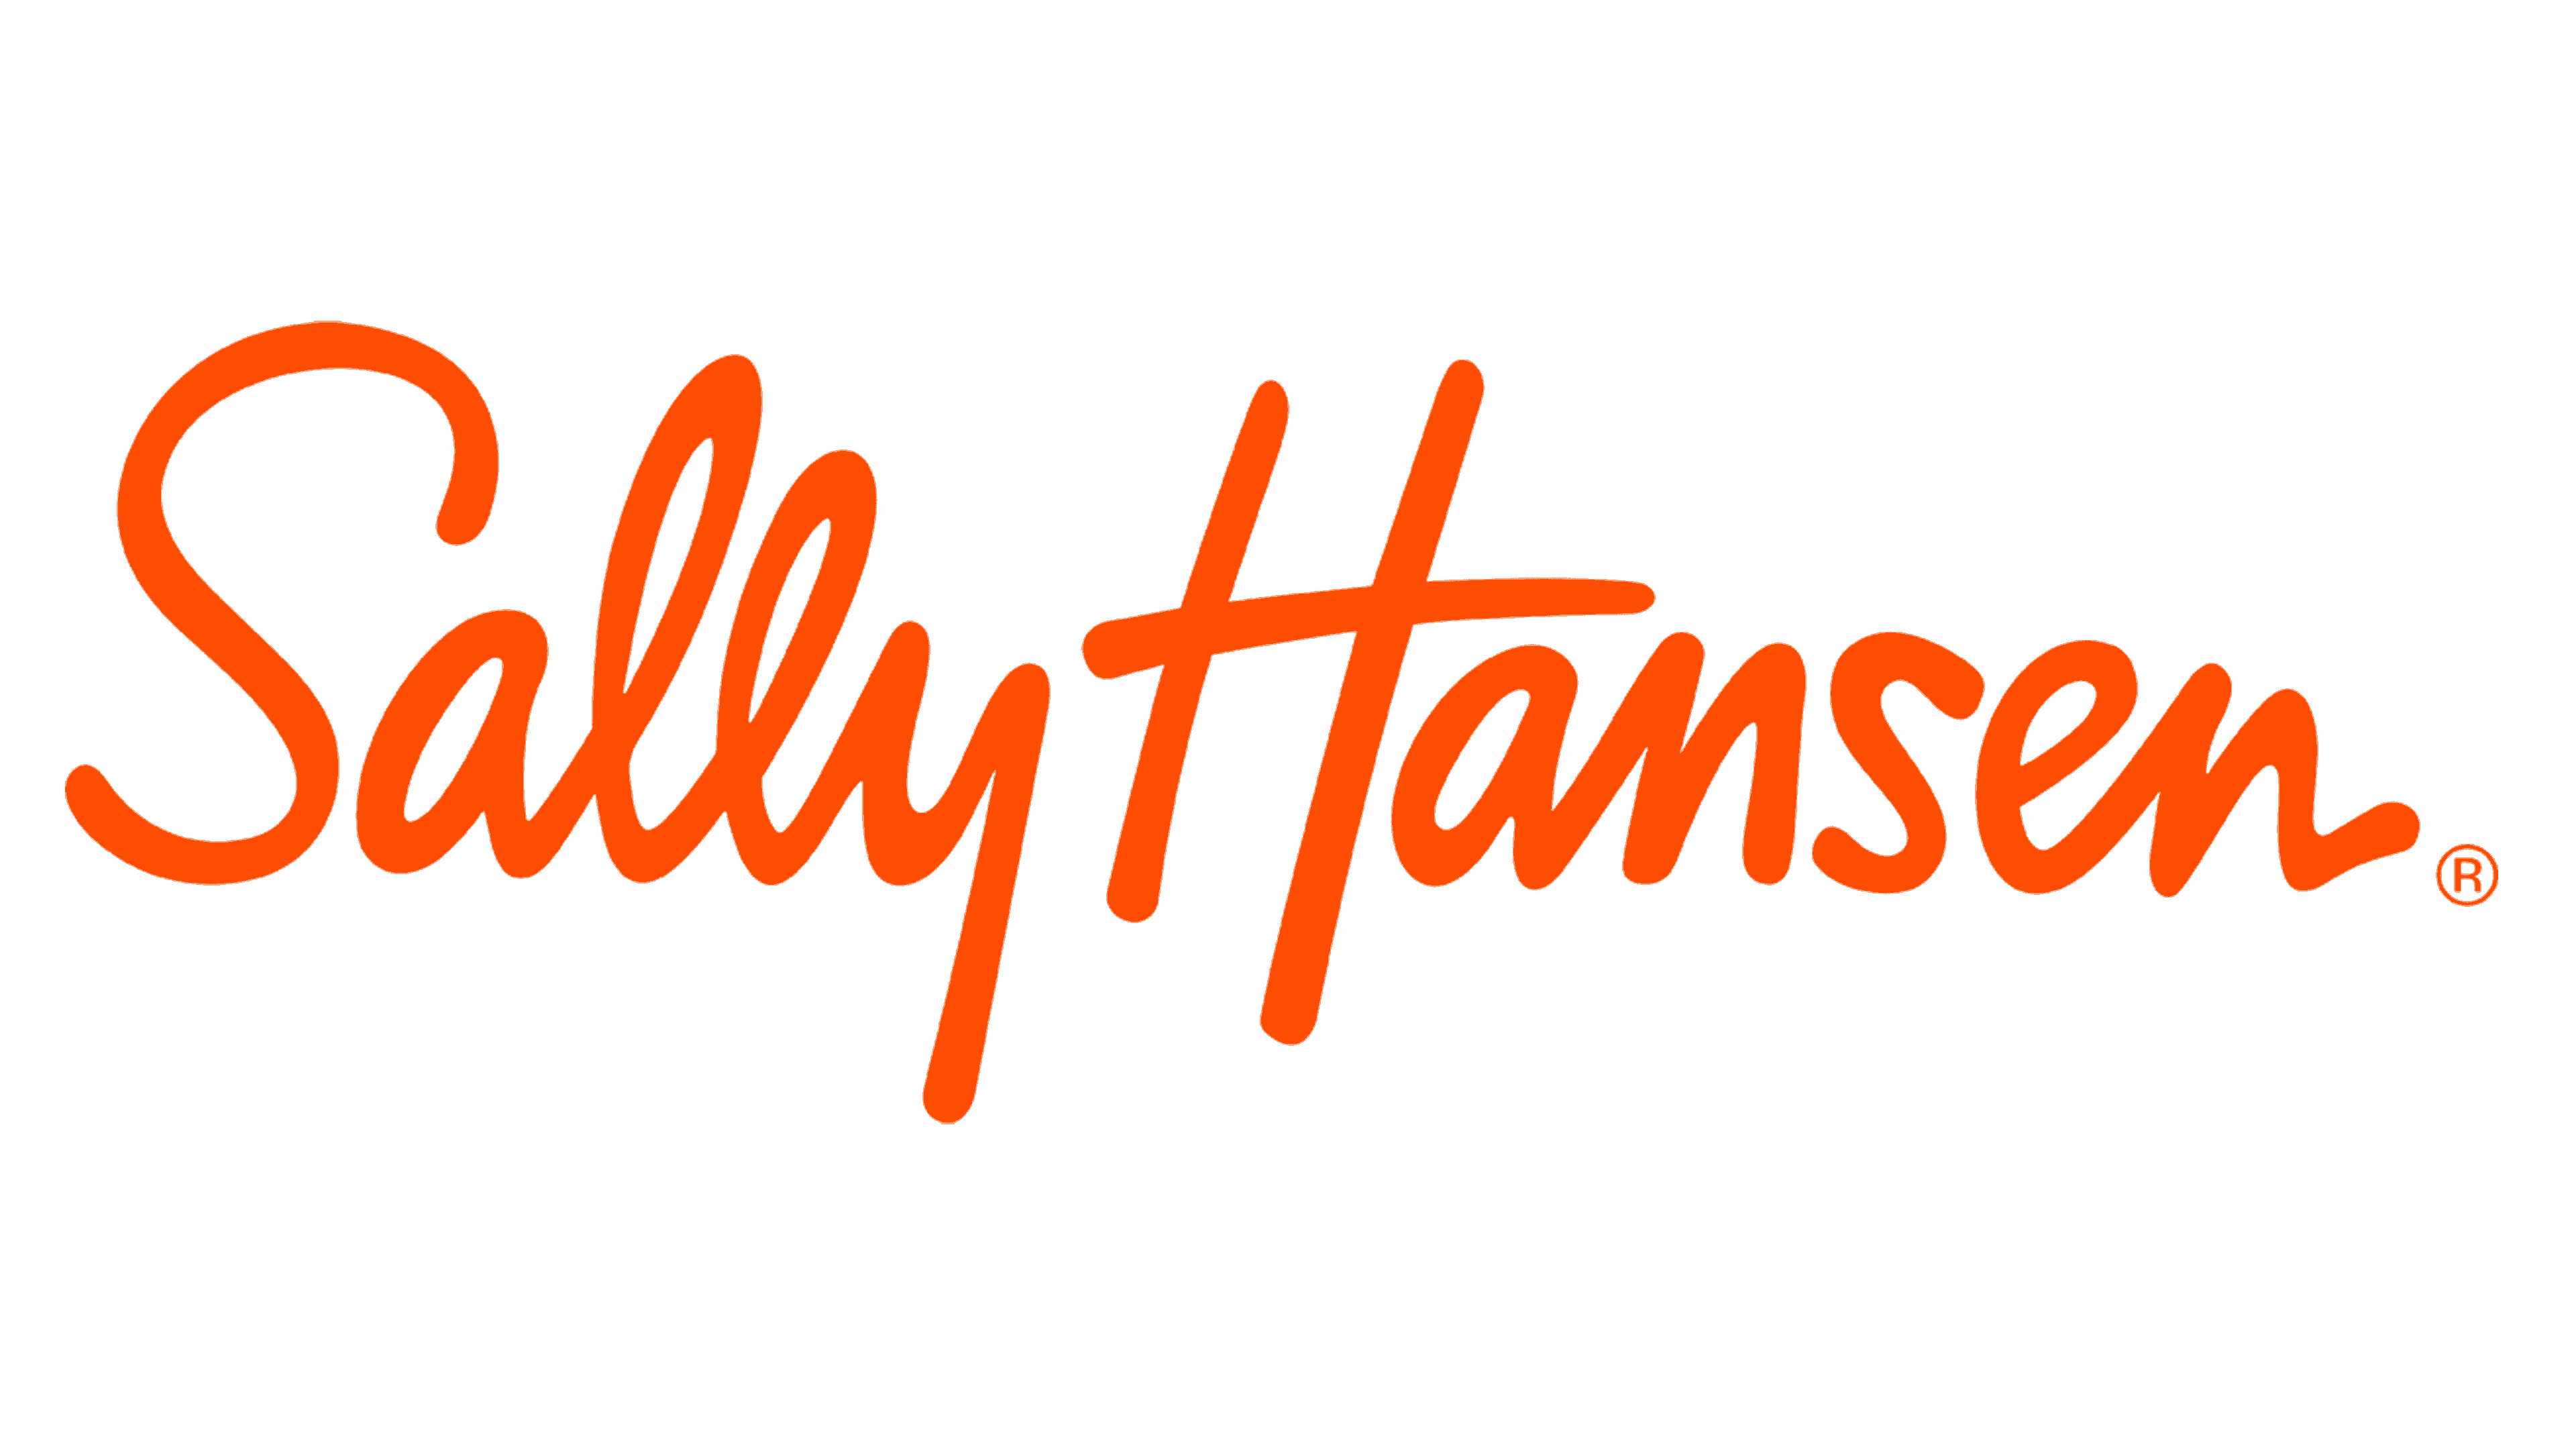 Sally-Hansen-logo